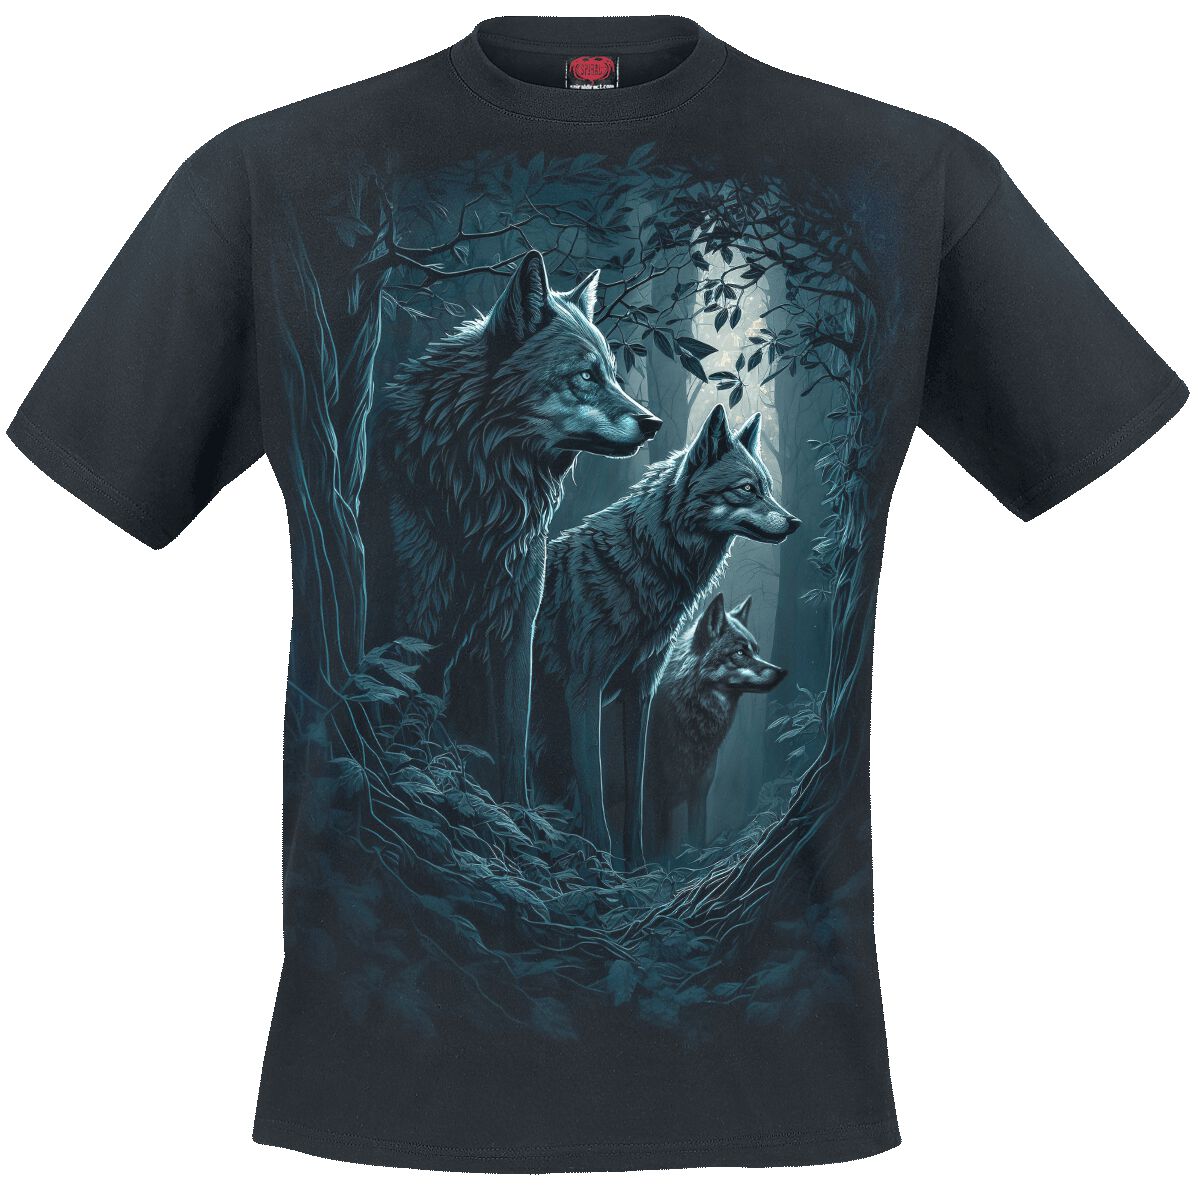 Spiral T-Shirt - Forest Guardians - S bis 4XL - für Männer - Größe 4XL - schwarz